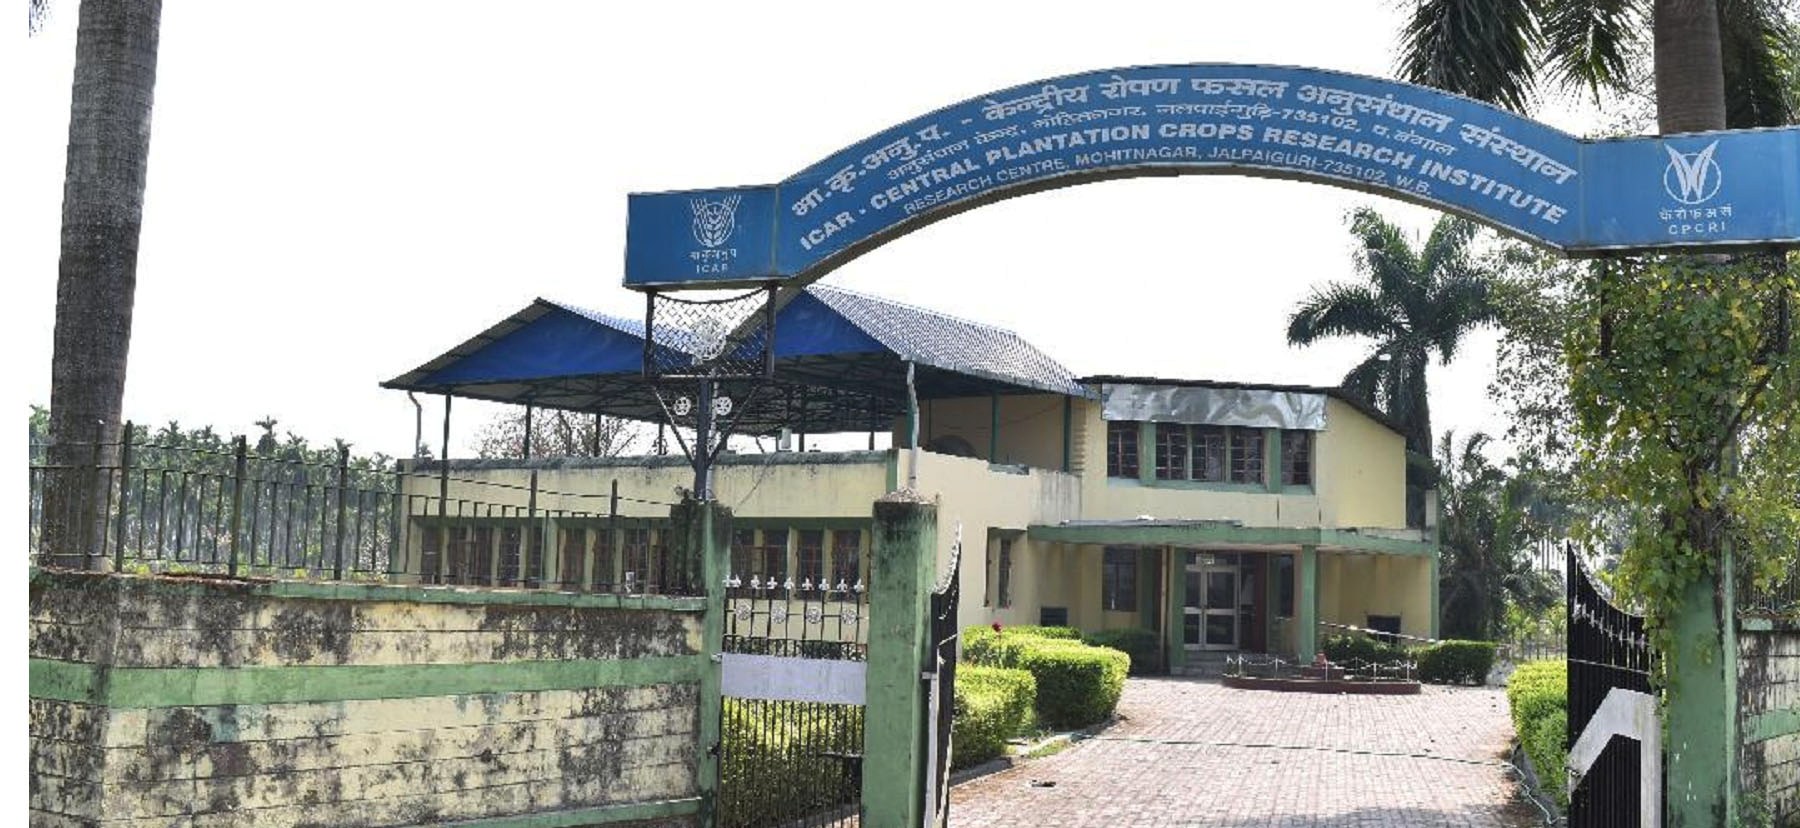 ICAR - CPCRI Research Centres, Mohitnagar